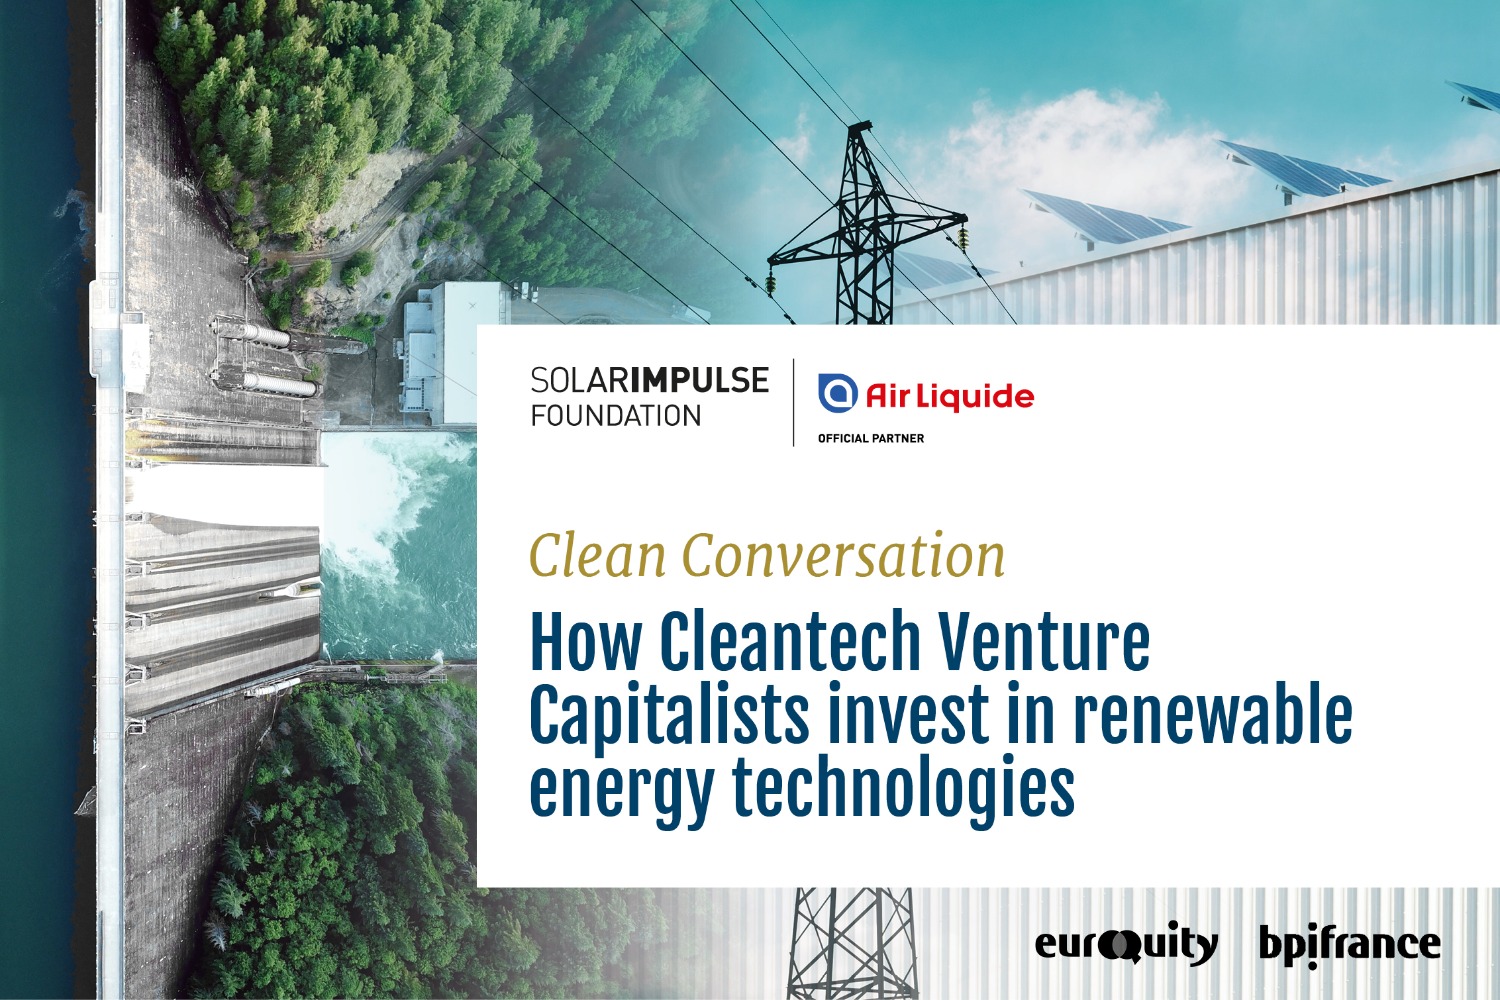 Clean Conversation powered by Air Liquide: Wie investieren Cleantech-Venture Capitalists in Technologien für erneuerbare Energien?